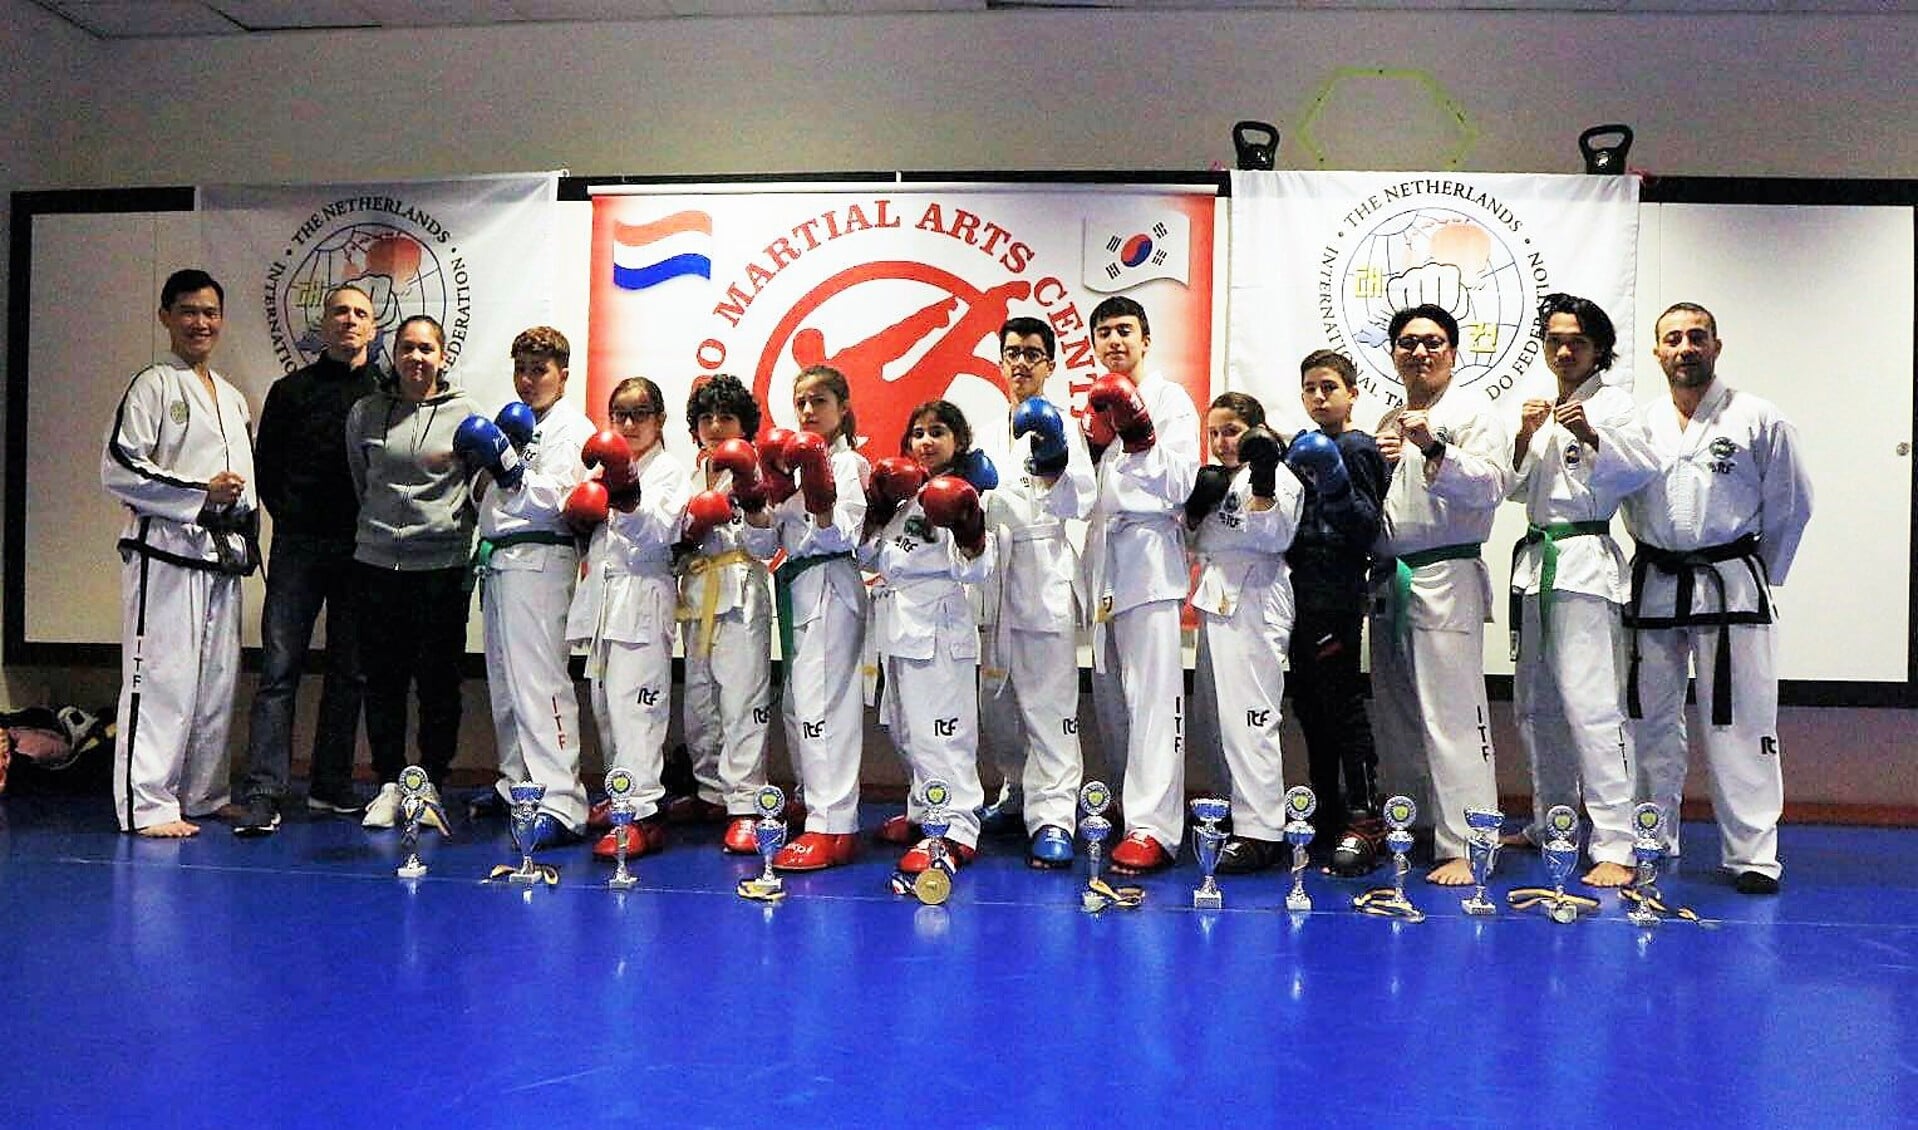 De leden van Taekwon-do Martial Arts Center Delft leverden vorig weekend een puike prestatie. 